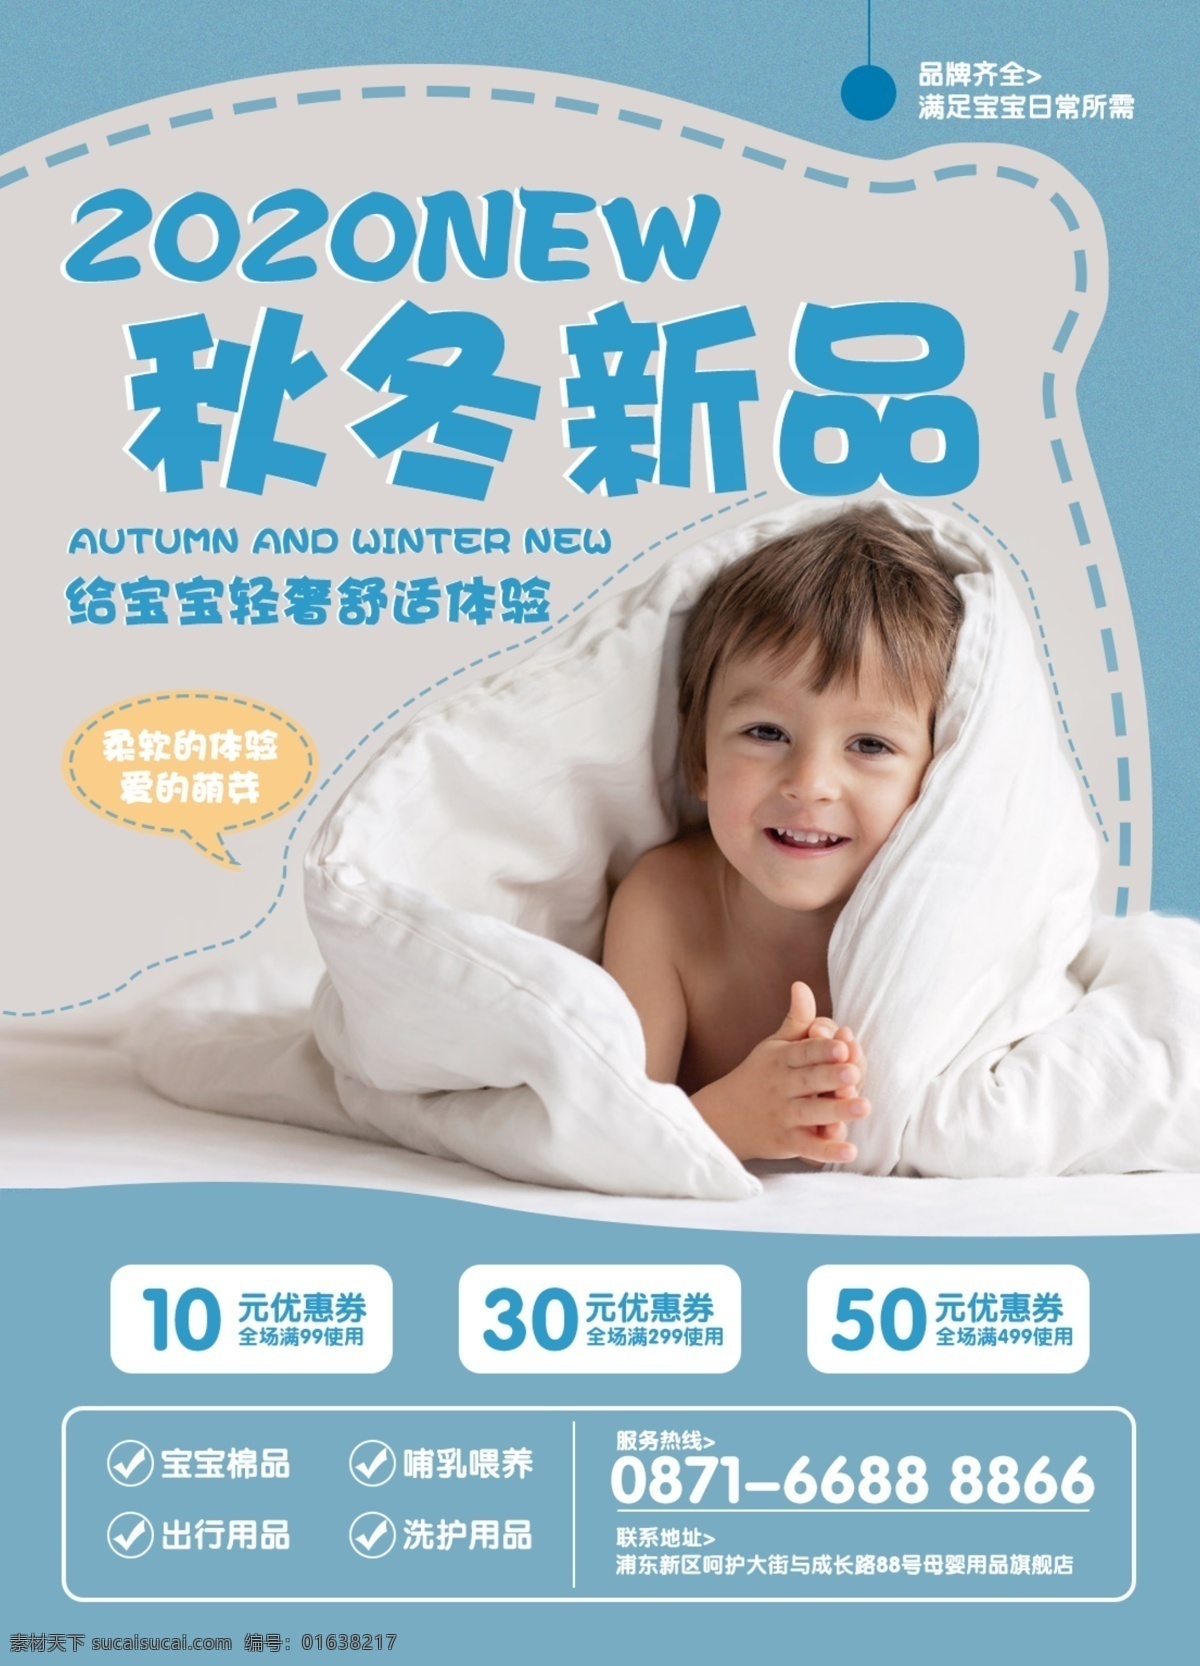 母婴用品 母婴 儿童 日常用品 被子 秋冬新品 海报 平面设计 促销 活动